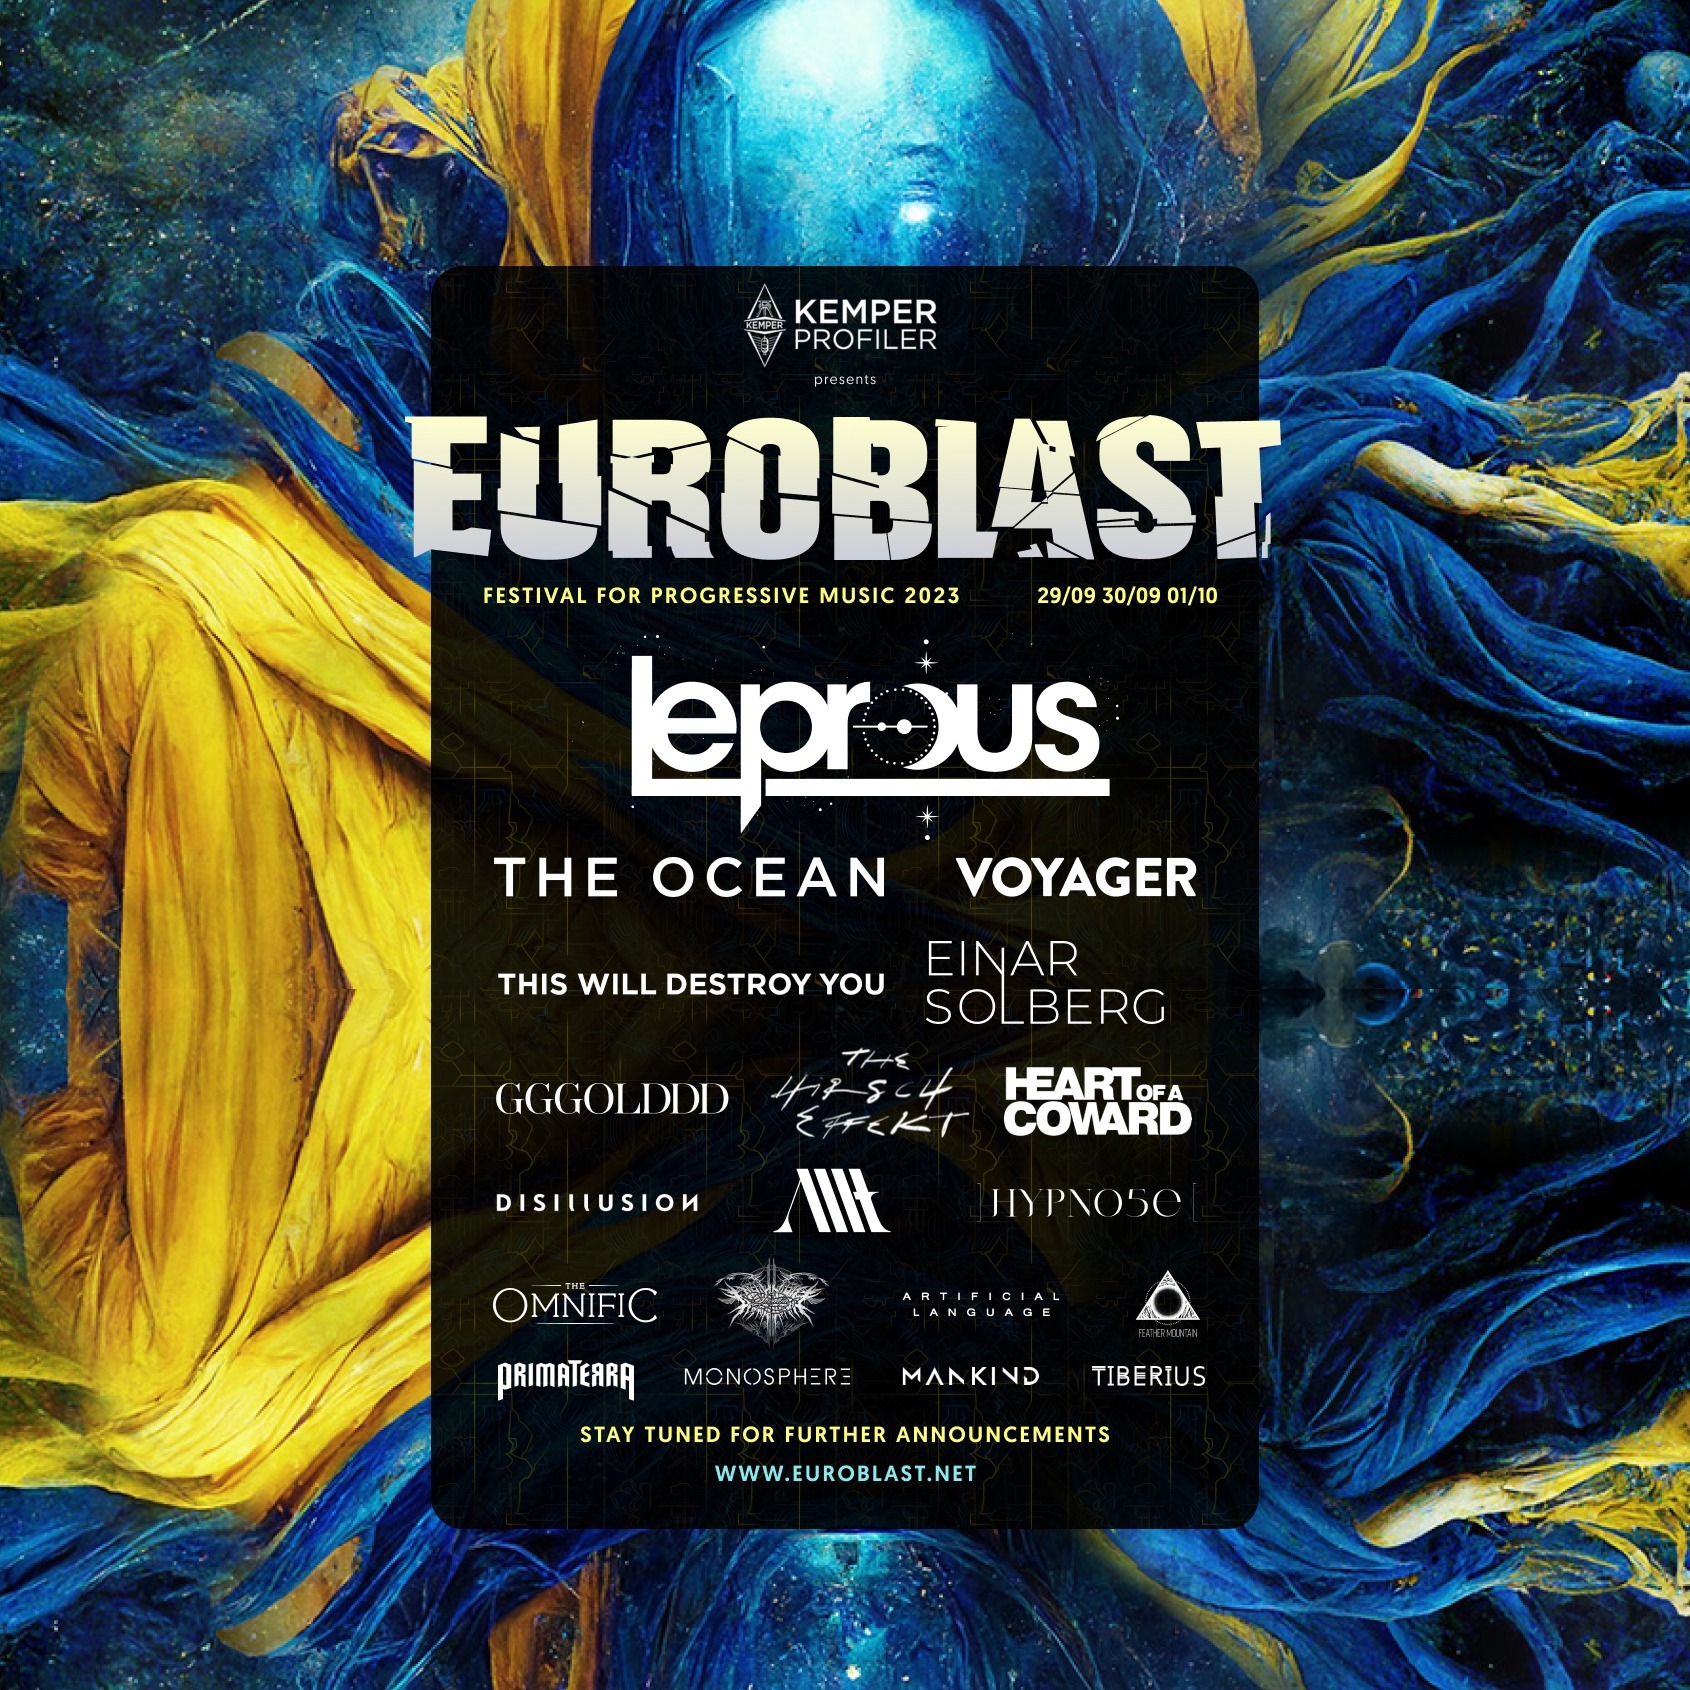 Eerste bands voor Euroblast festival 2022 bekend!